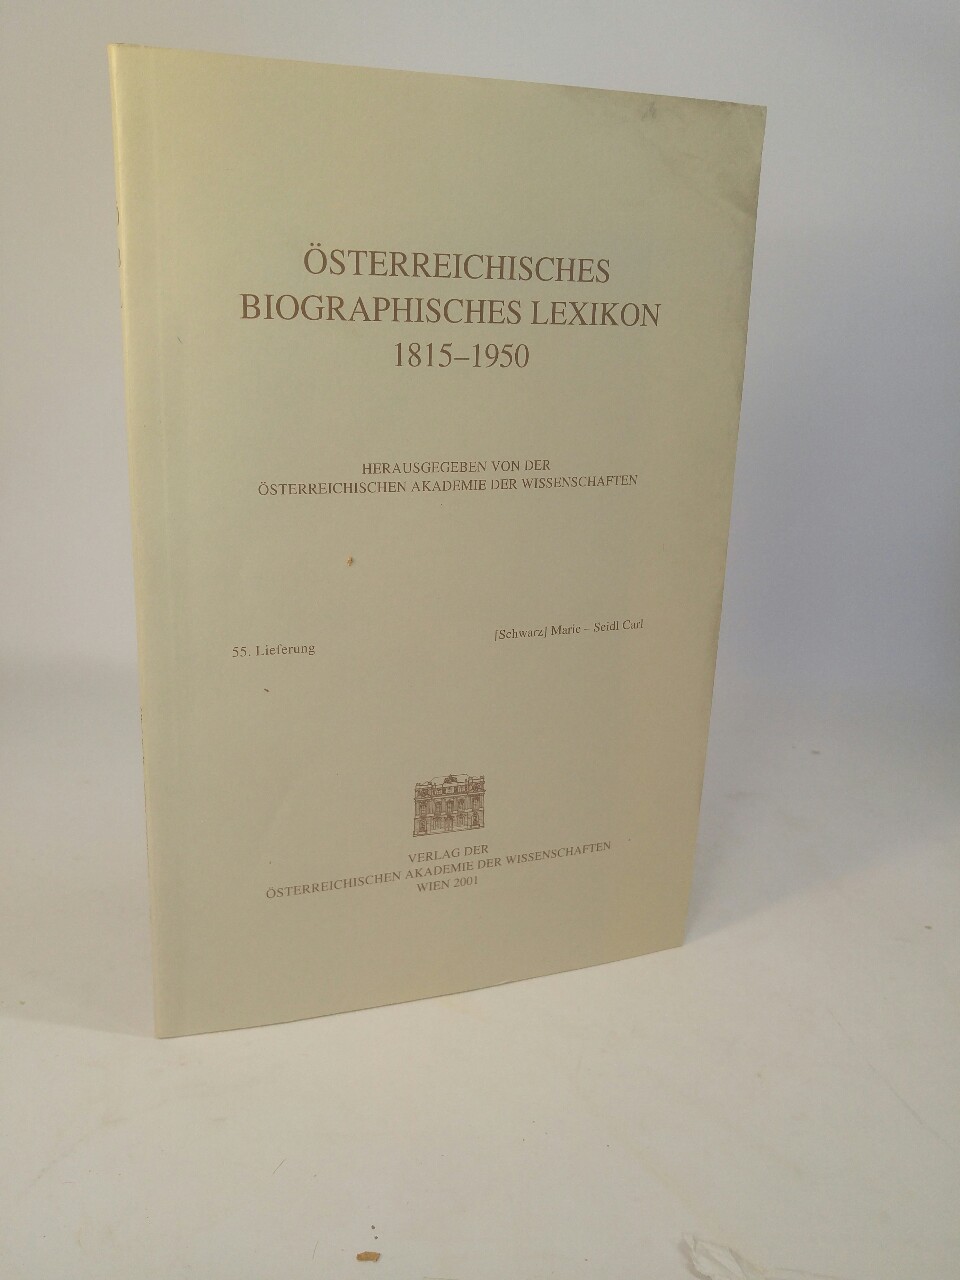 Österreichisches Biographisches Lexikon 1815-1950. 55. Lieferung: [Schwarz] Marie - Seidl Carl. - Österreichische Akademie der Wissenschaften